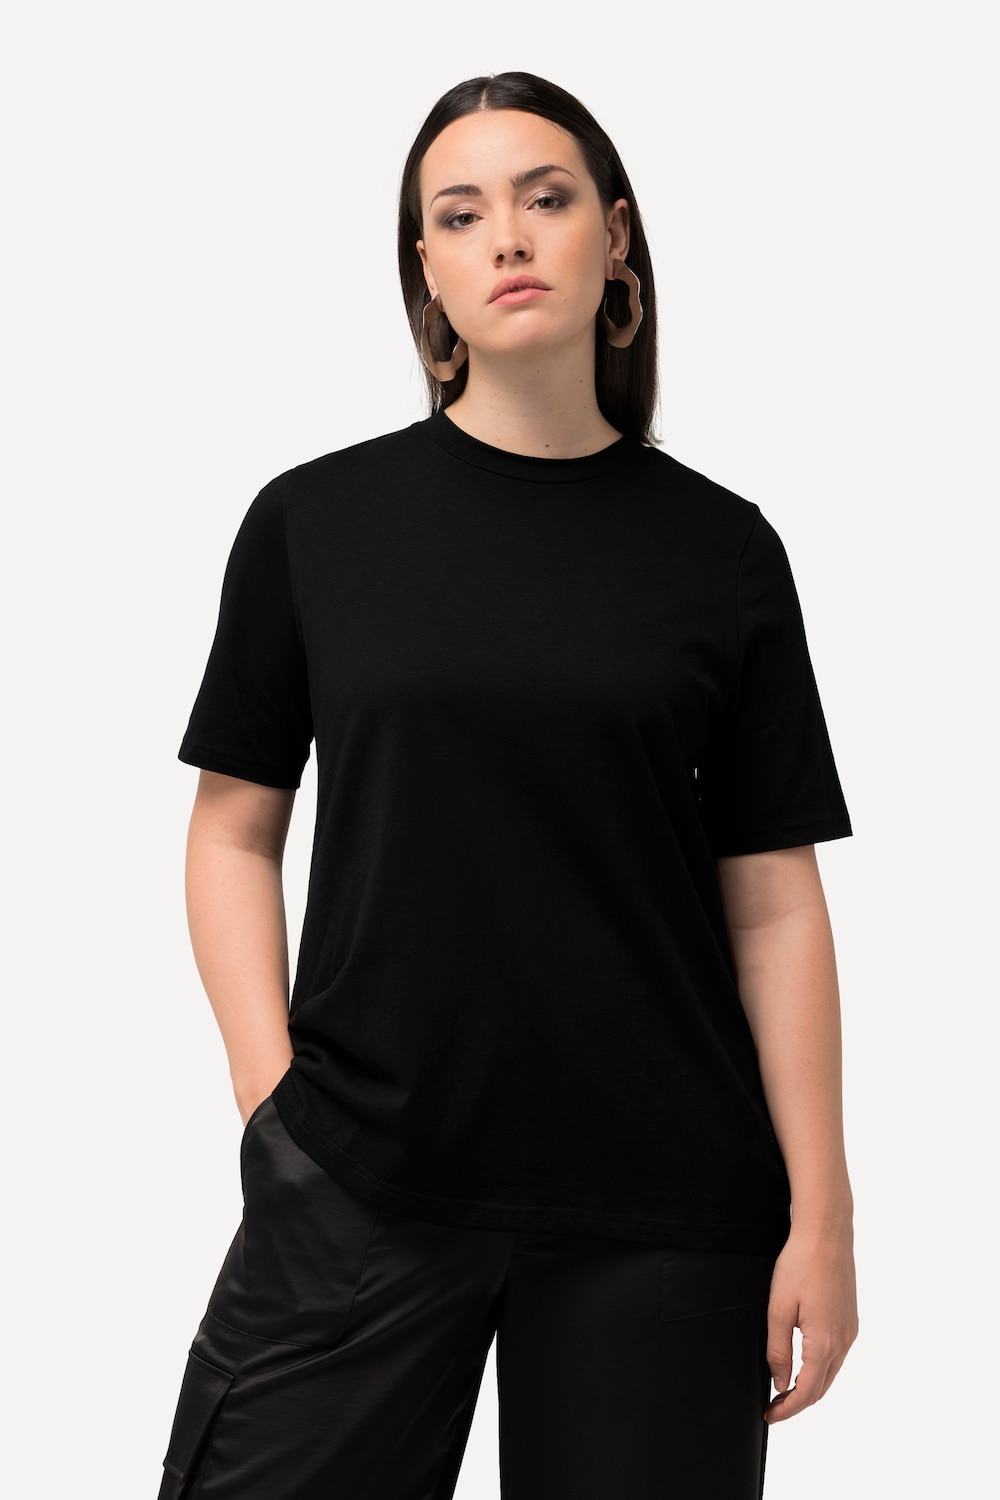 Grote Maten T-shirt, Dames, zwart, Maat: 50/52, Katoen, Ulla Popken